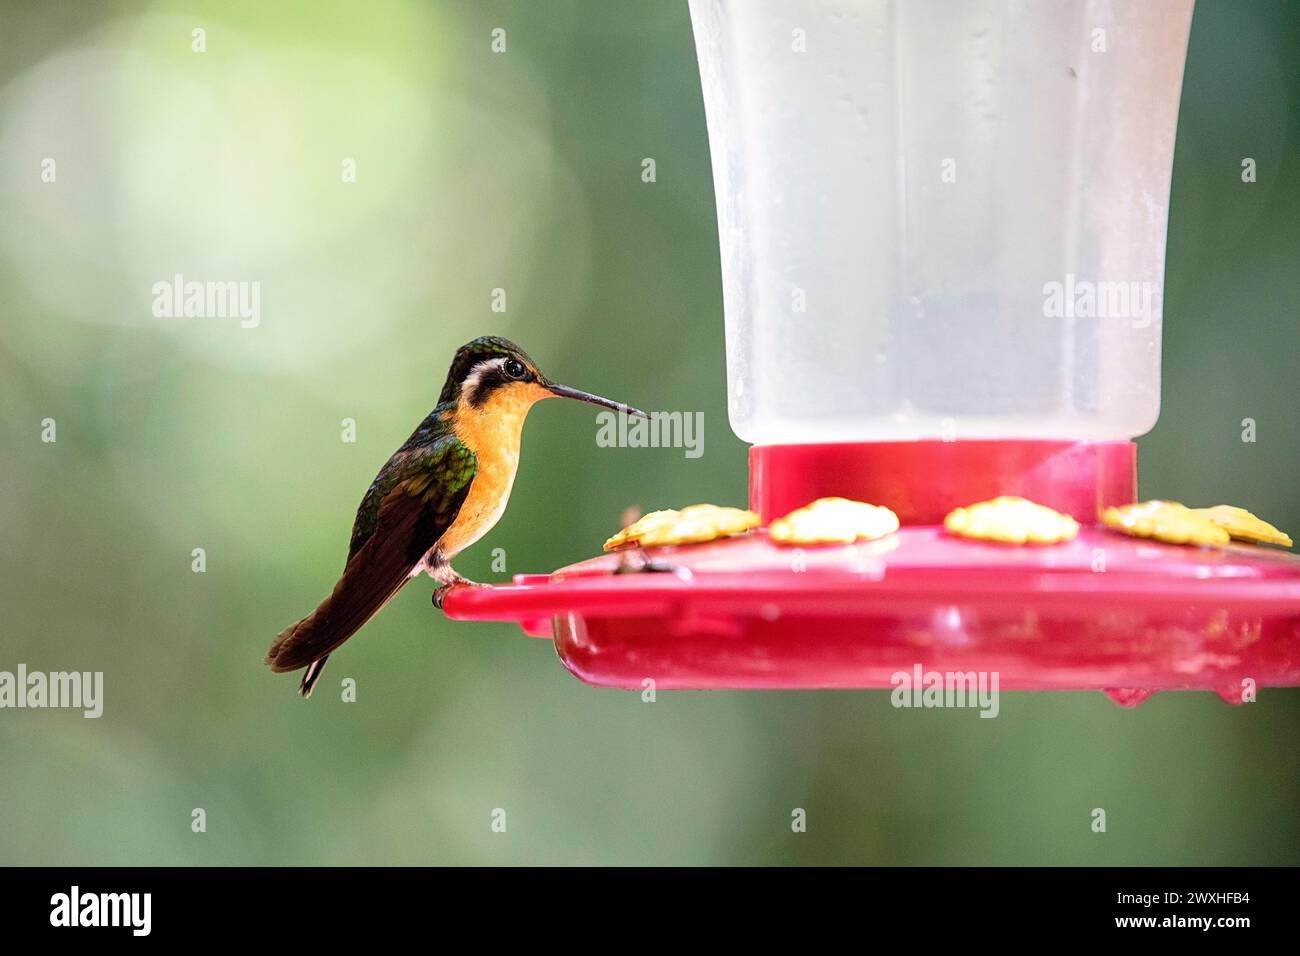 Bellissimo colibrì di montagna dalla coda grigia (Lampornis cinereicauda) seduto su un alveo, rilassandosi dopo aver dato da mangiare, nella foresta tropicale di nuvole, in Costa rica Foto Stock